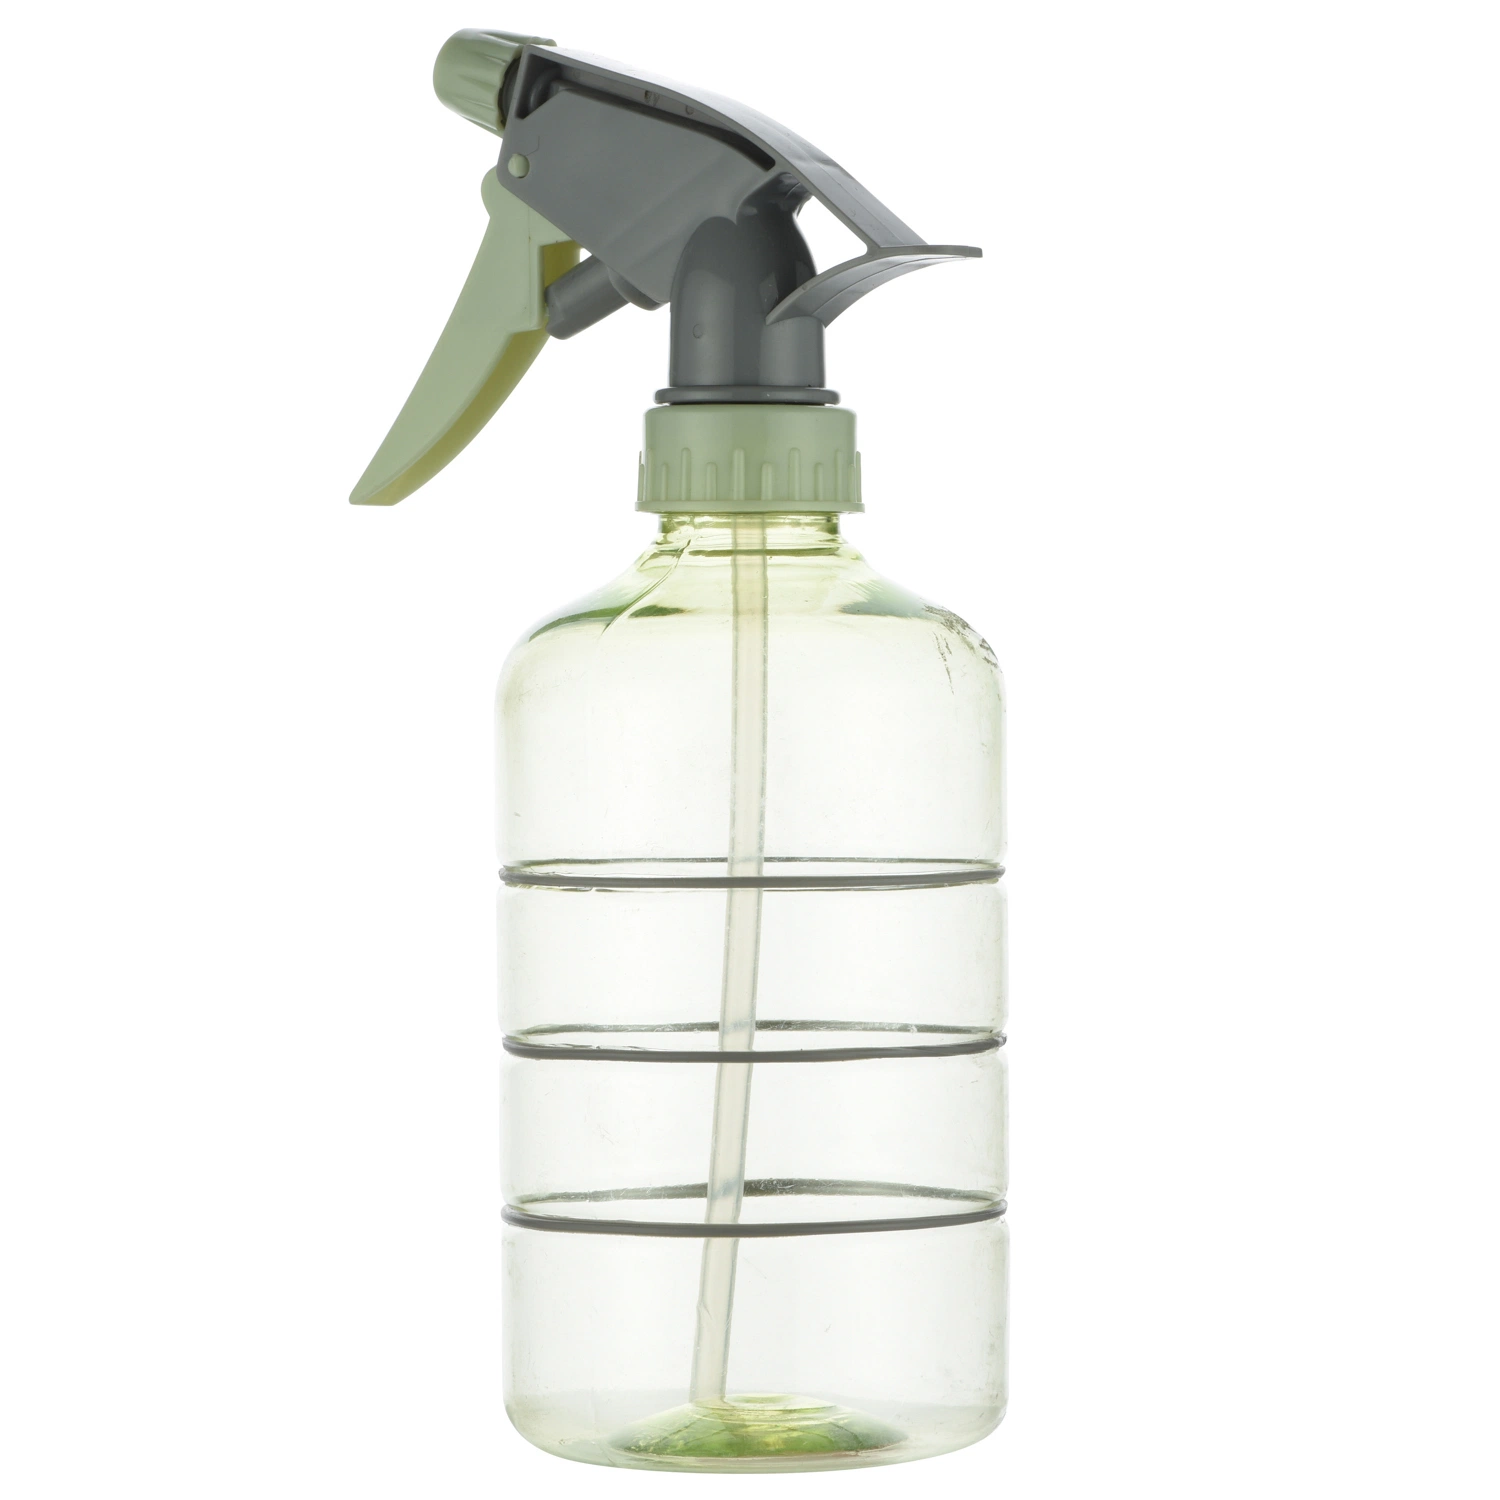 Olive Green Sprayer Bottles for Household Cleaning